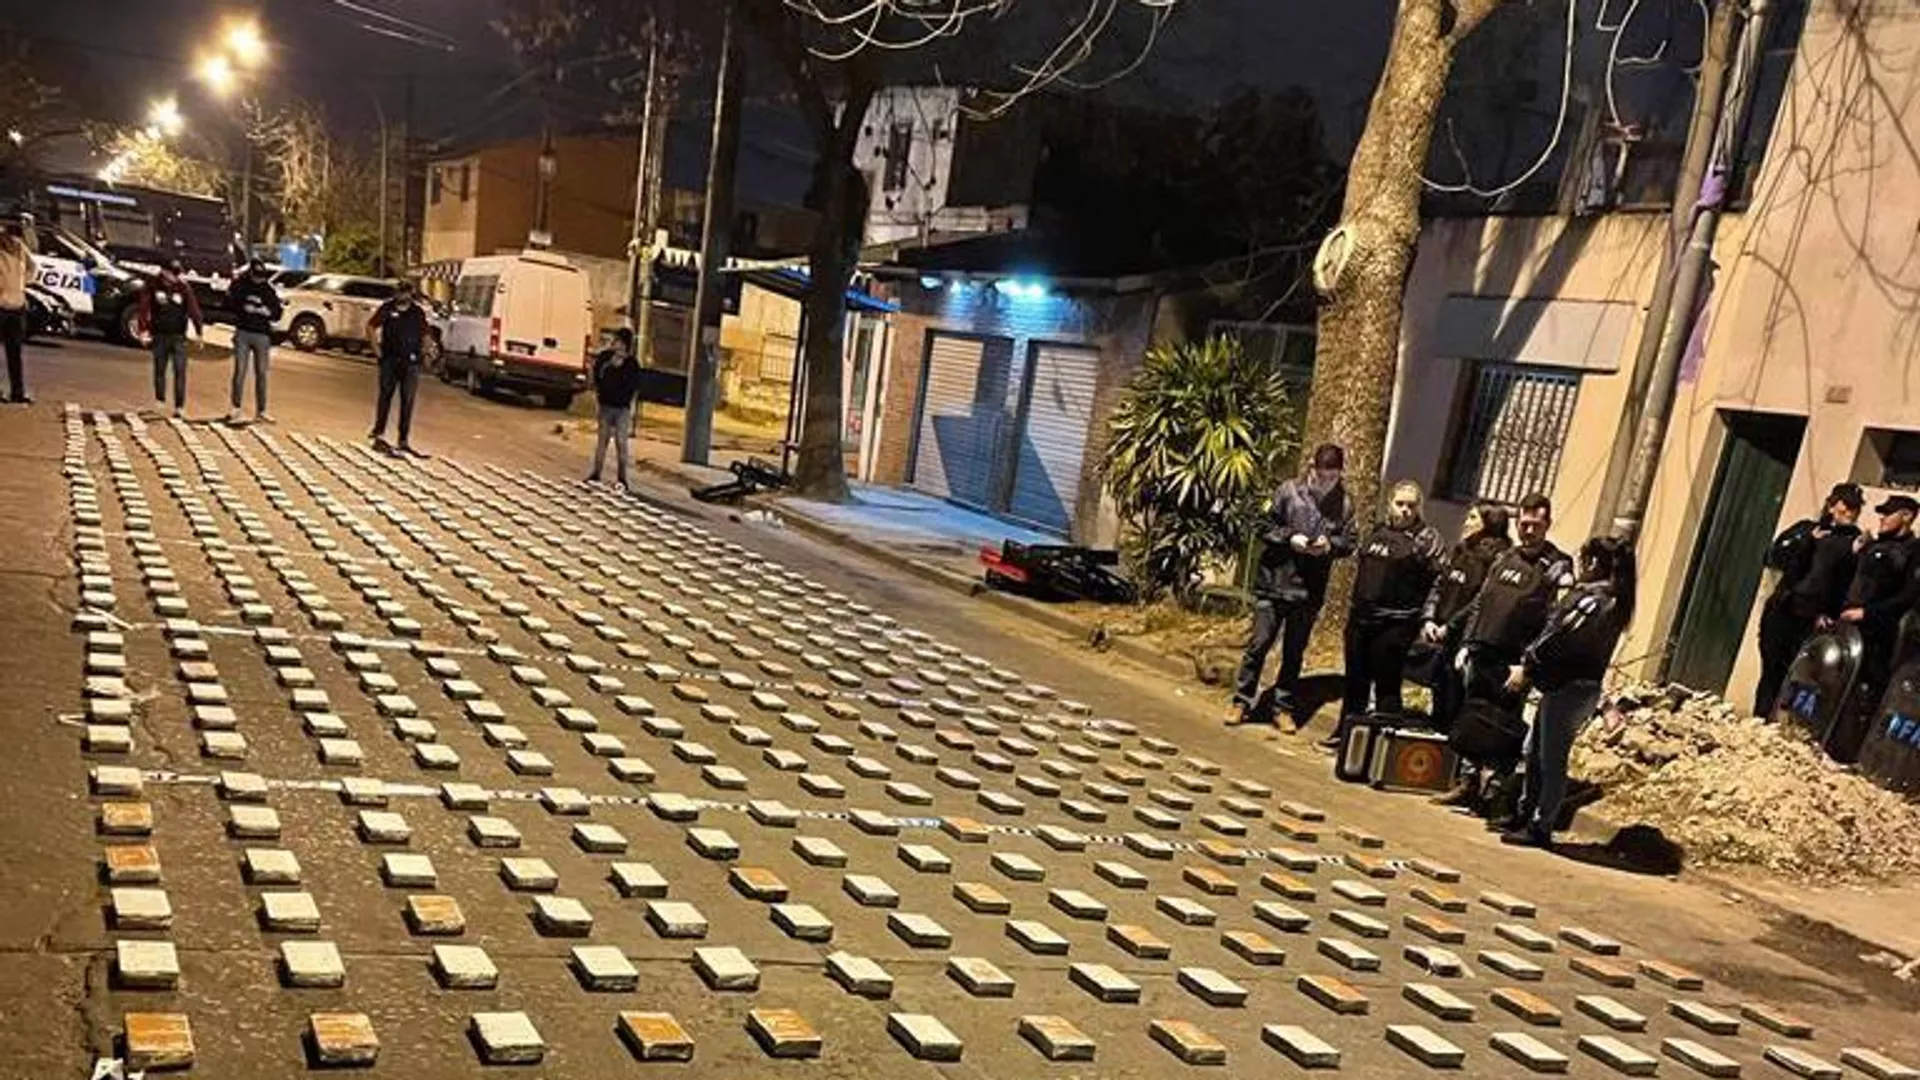  Las autoridades argentinas incautan 1,5 toneladas de cocaína en la ciudad de Rosario